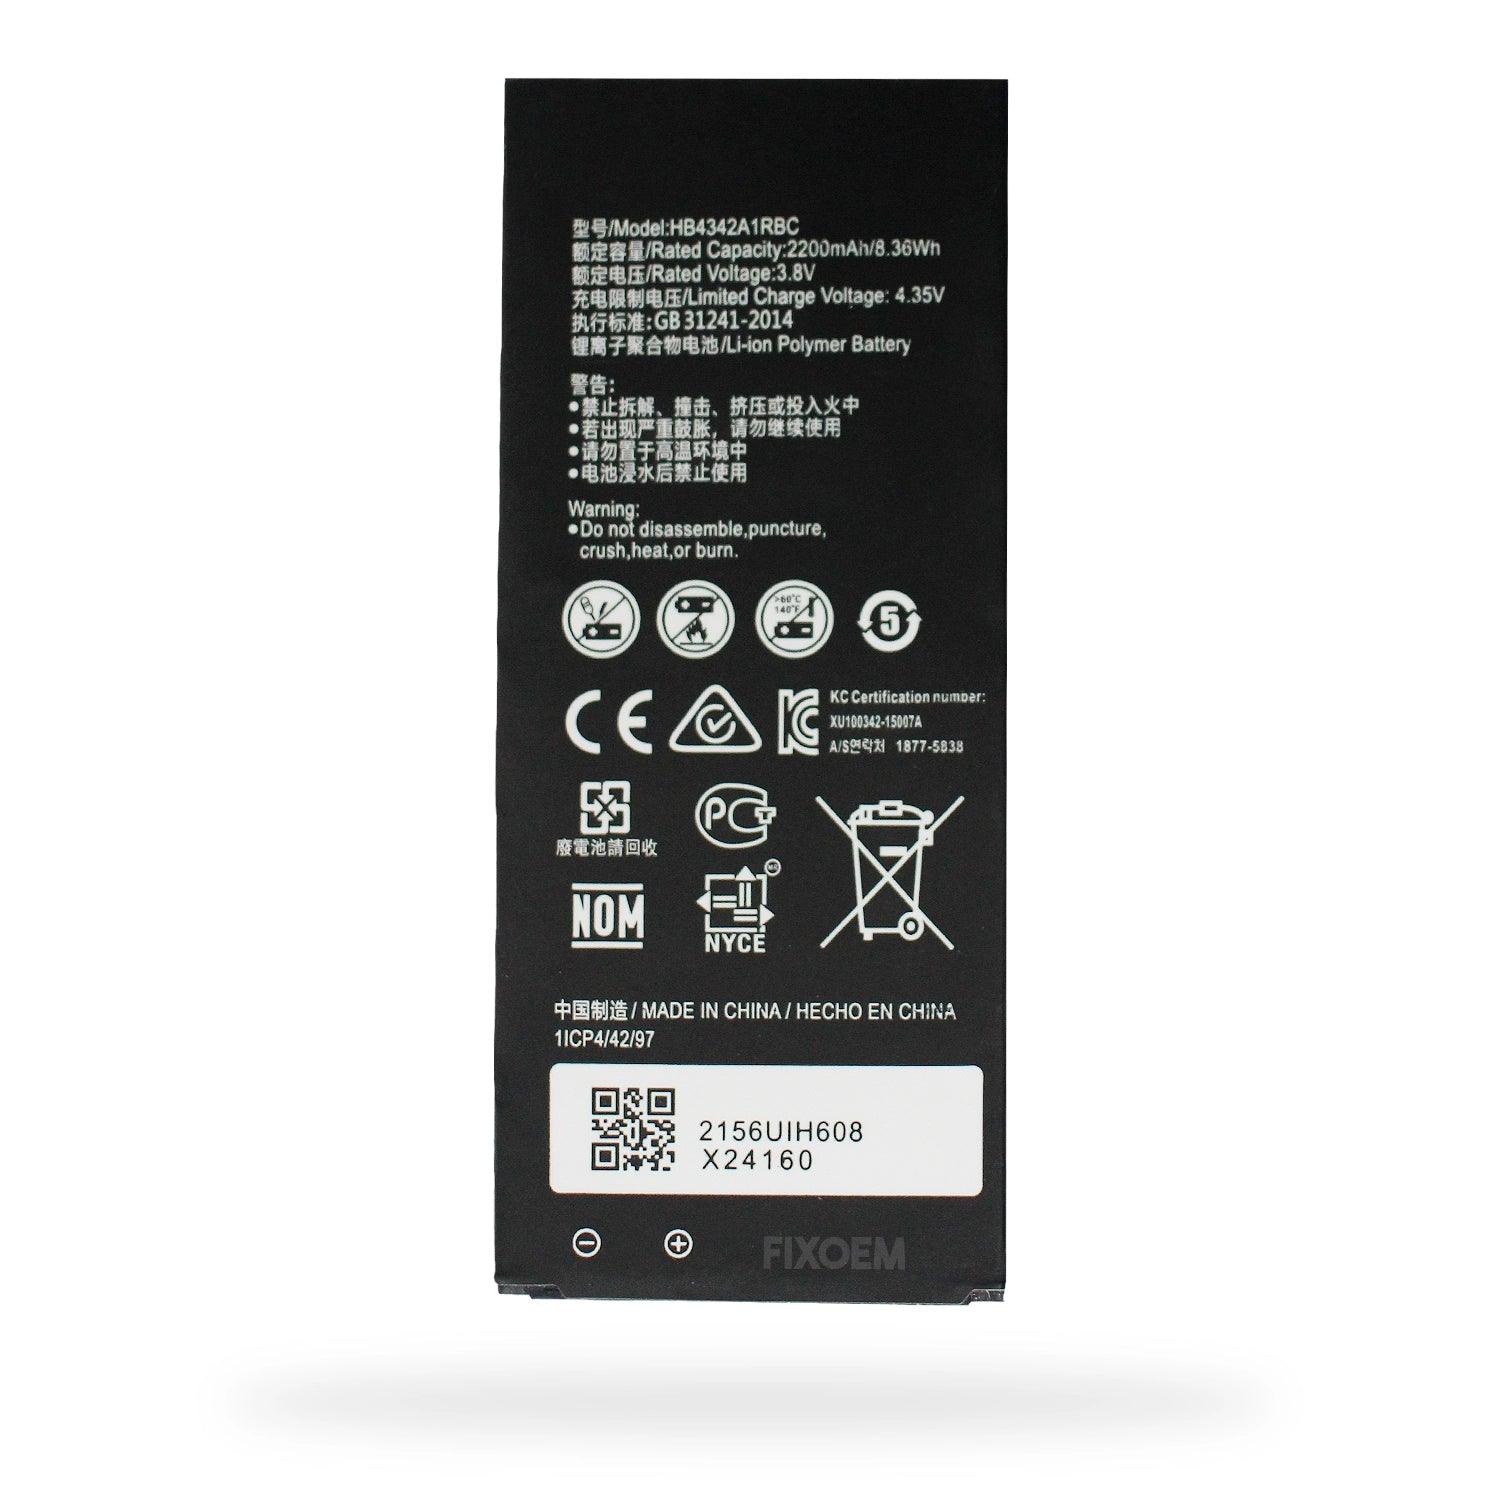 Bateria Huawei Y5Ii / Y6 Cun-L03 Mrd-LX3 Hb4342A1Rbc. |+2,000 reseñas 4.8/5 ⭐